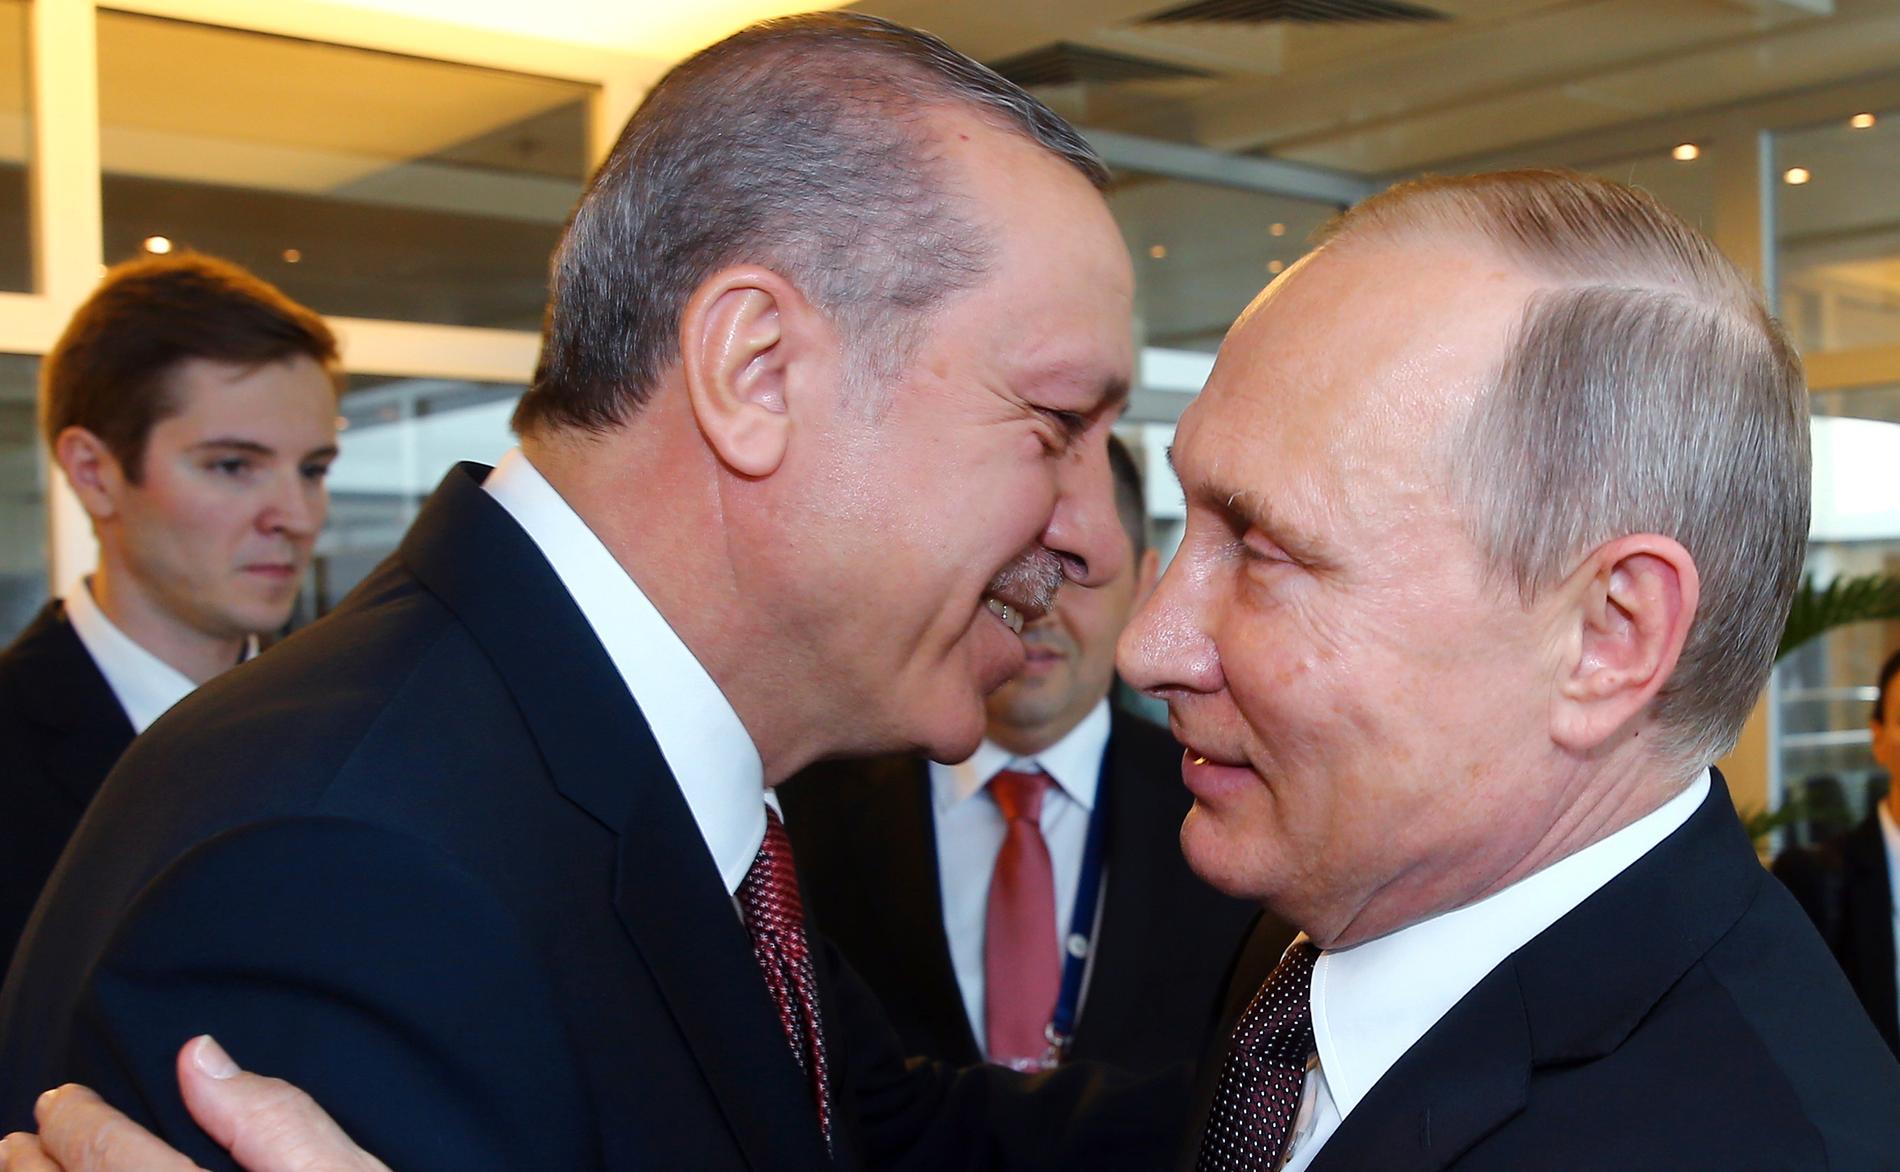  Nato, Kina och Ryssland – Erdoğan är kompis med alla